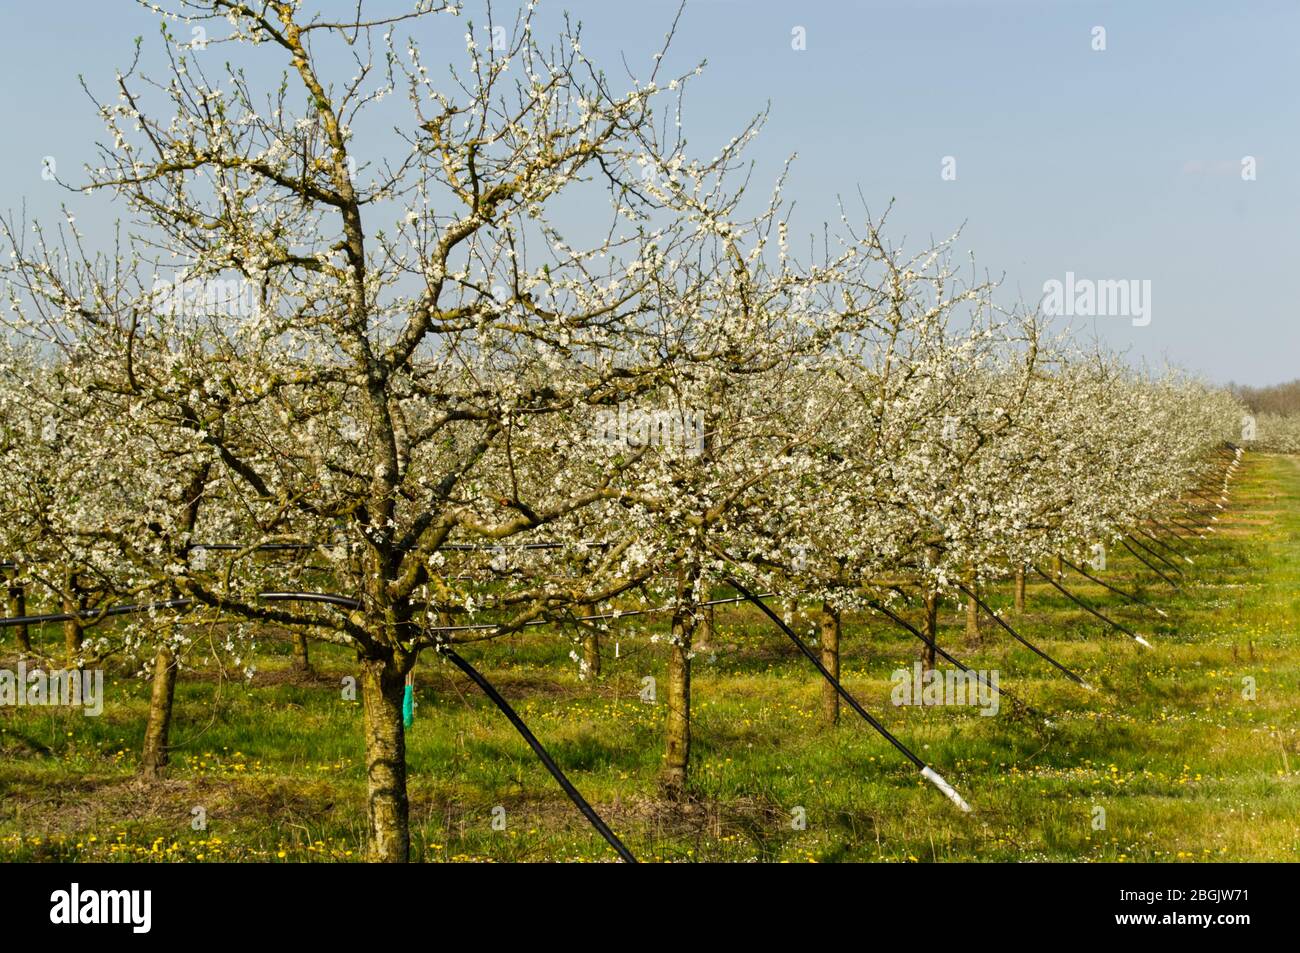 Blossom on plum (prune) trees in spring, Lot-et-Garonne, France Stock Photo